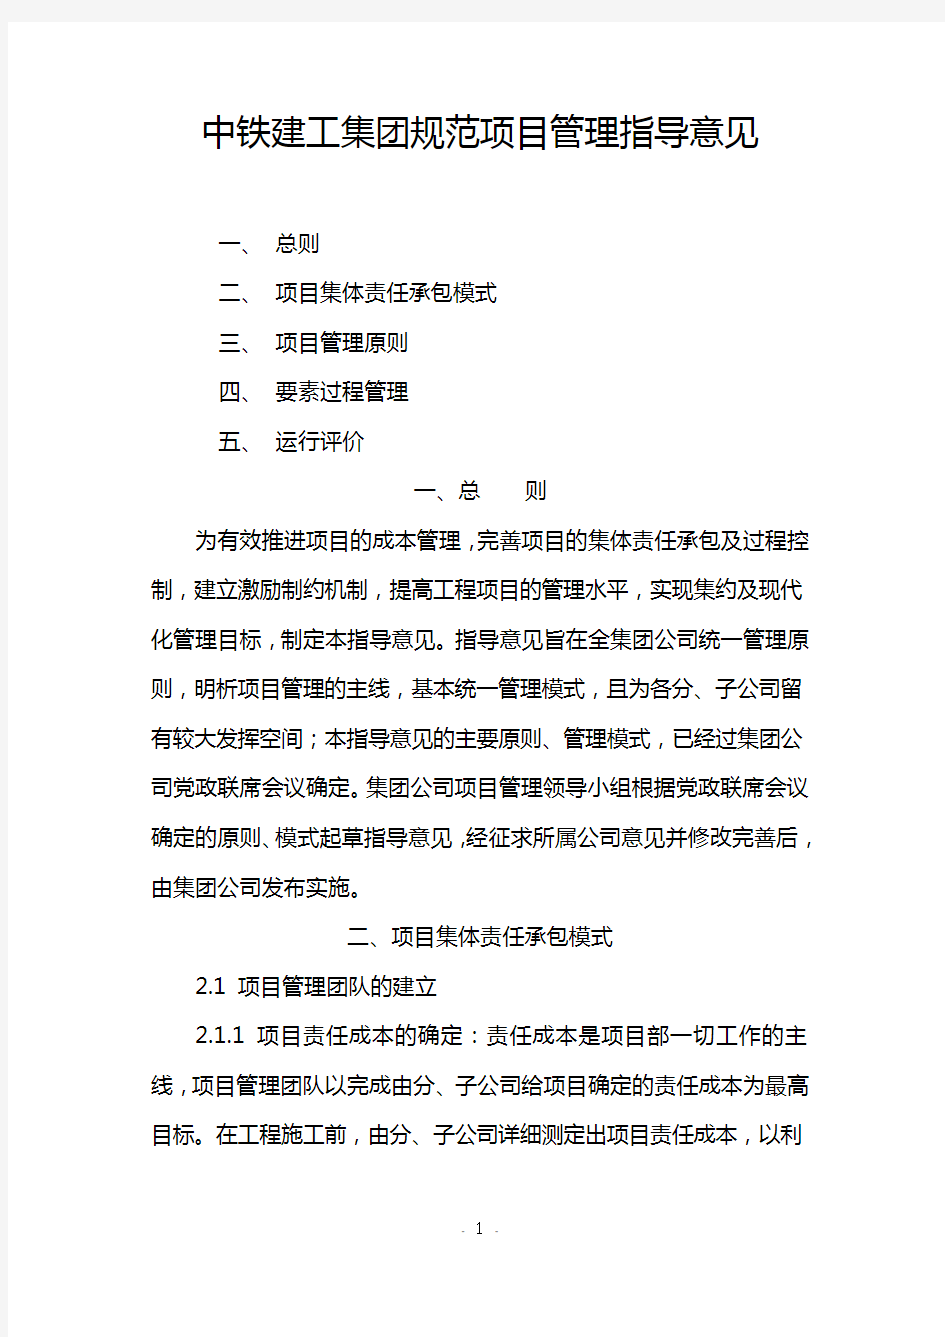 中铁建工集团规范项目管理指导意见